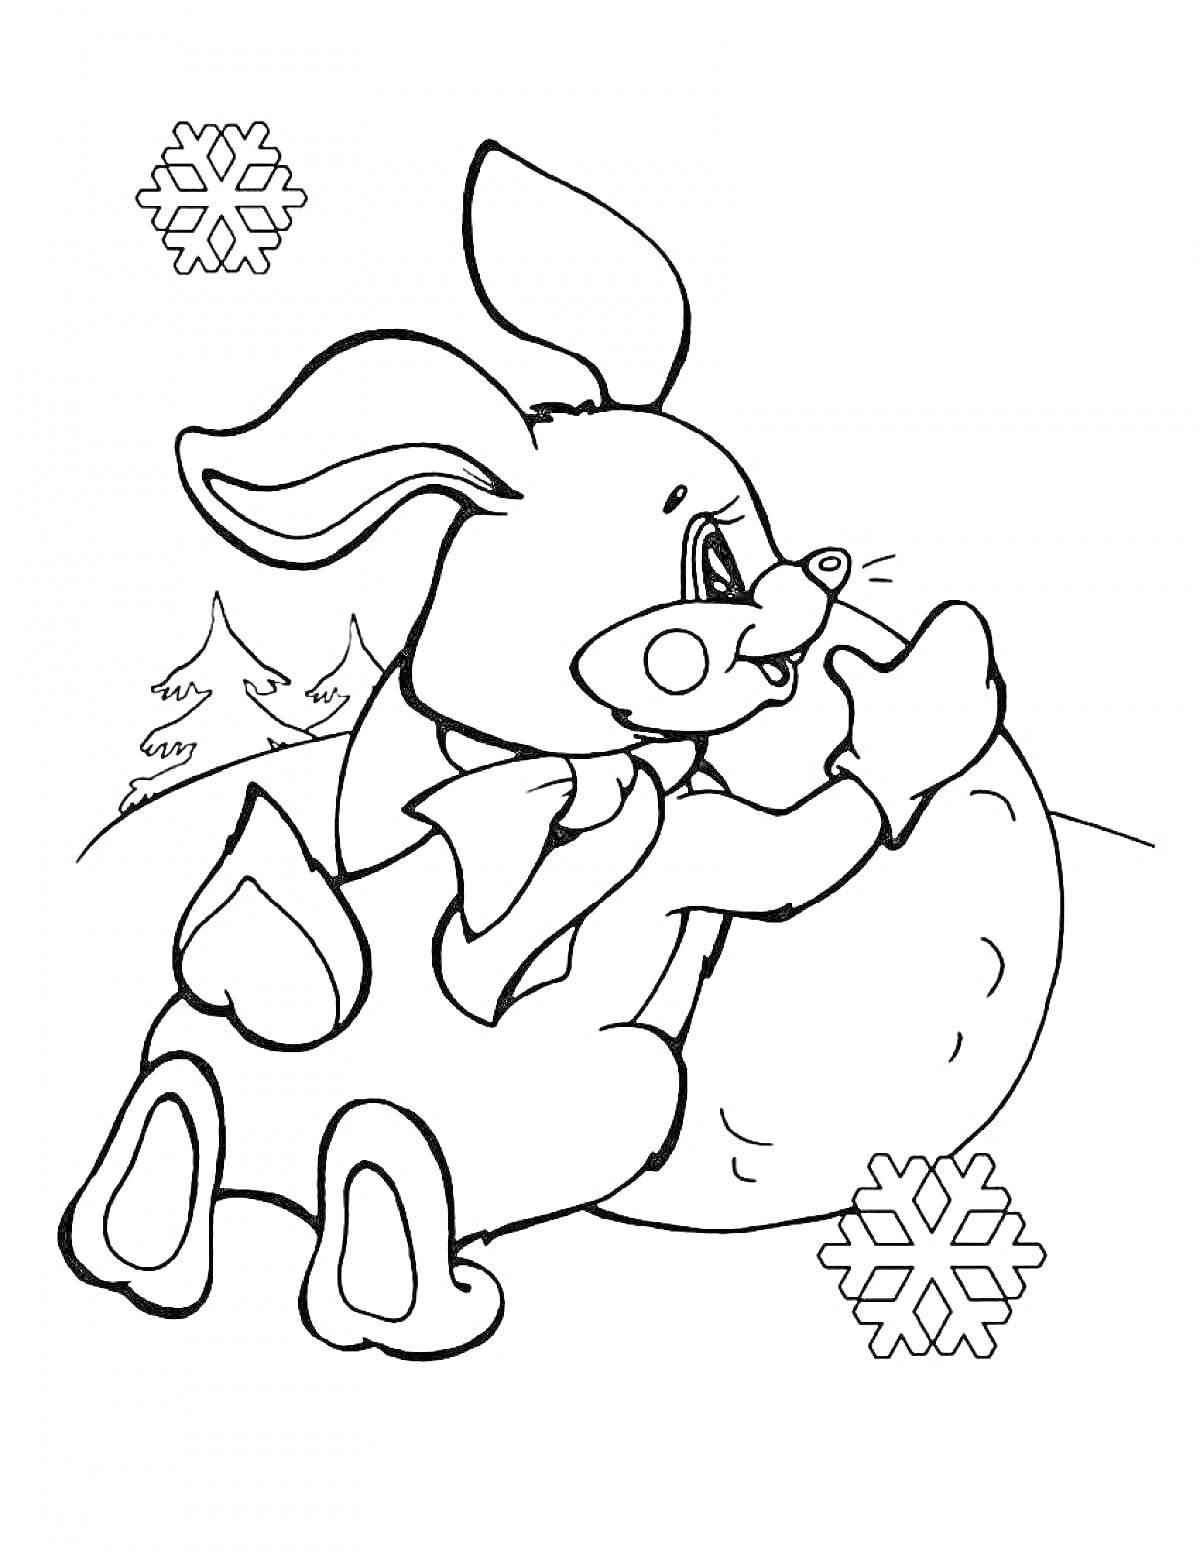 Раскраска Заяц в шарфике держит большой снежок, на фоне несколько елочек и снежинки